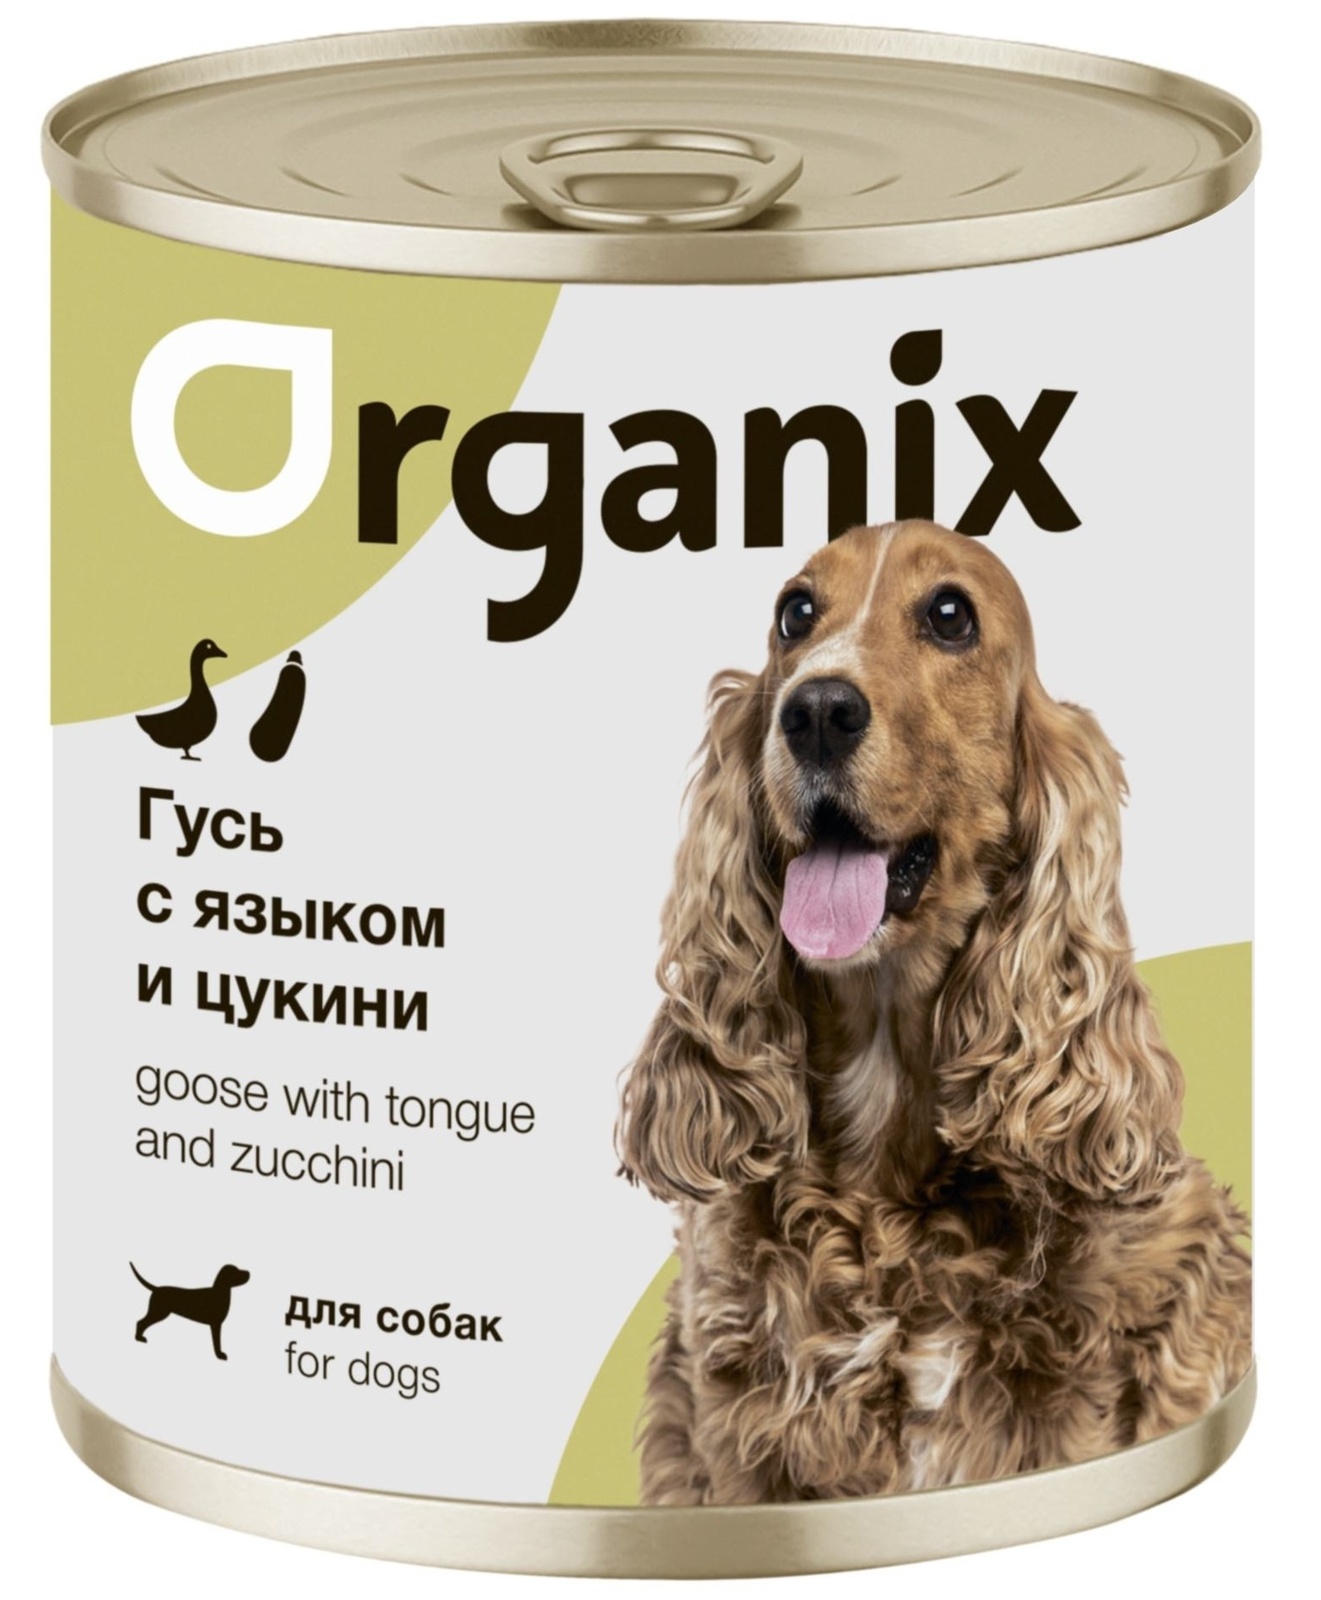 Organix консервы Organix консервы для собак Рагу из гуся с языком и цуккини (100 г) organix консервы консервы для собак рагу из гуся с языком и цуккини 22ел16 0 4 кг